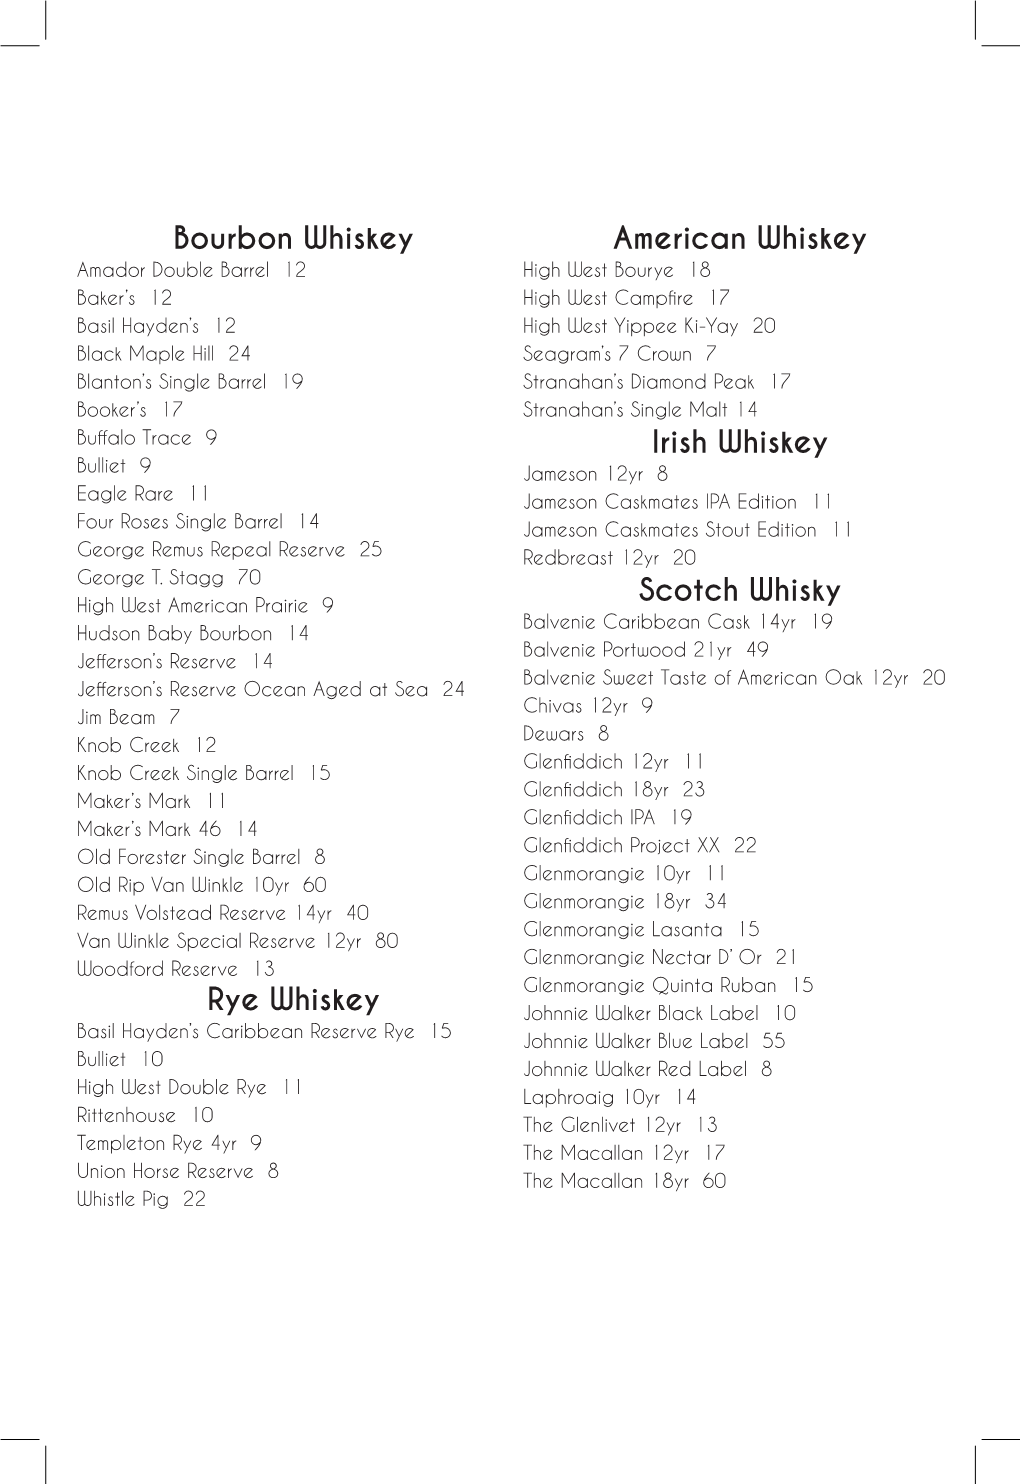 Bourbon Whiskey Rye Whiskey American Whiskey Irish Whiskey